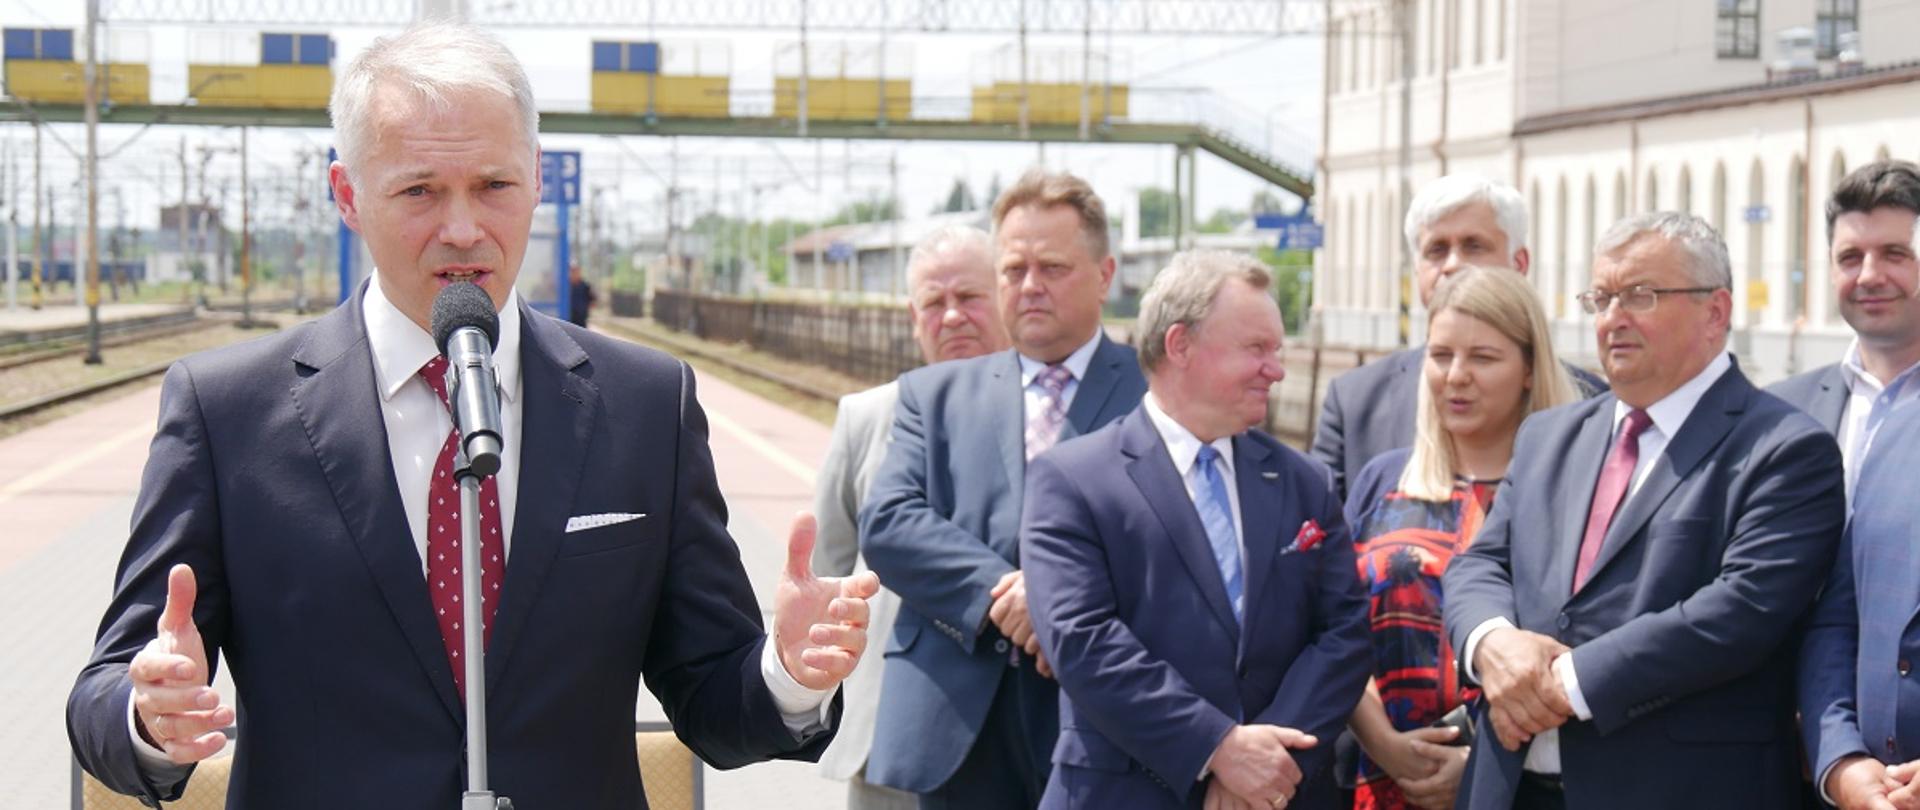 zdjęcie przedstawia konferencje prasową ministra na peronie kolejowym